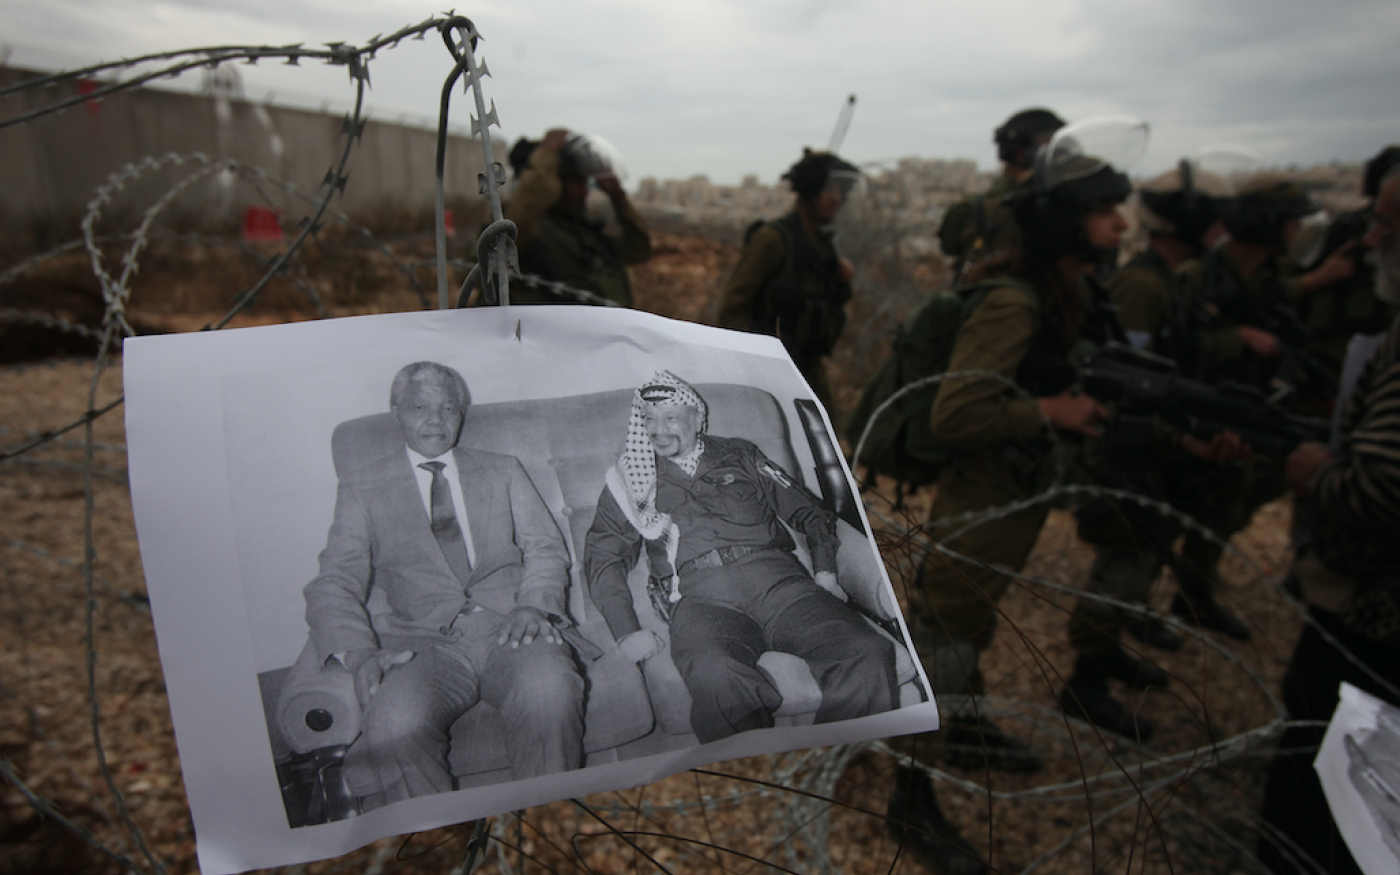 Manifestation d’activistes palestiniens contre l’occupation israélienne, dans le village de Bilin en Cisjordanie occupée, le 6 décembre 2013. Sur la photo, les dirigeants sud-africain Nelson Mandela et palestinien (Yasser Arafat) (AFP)